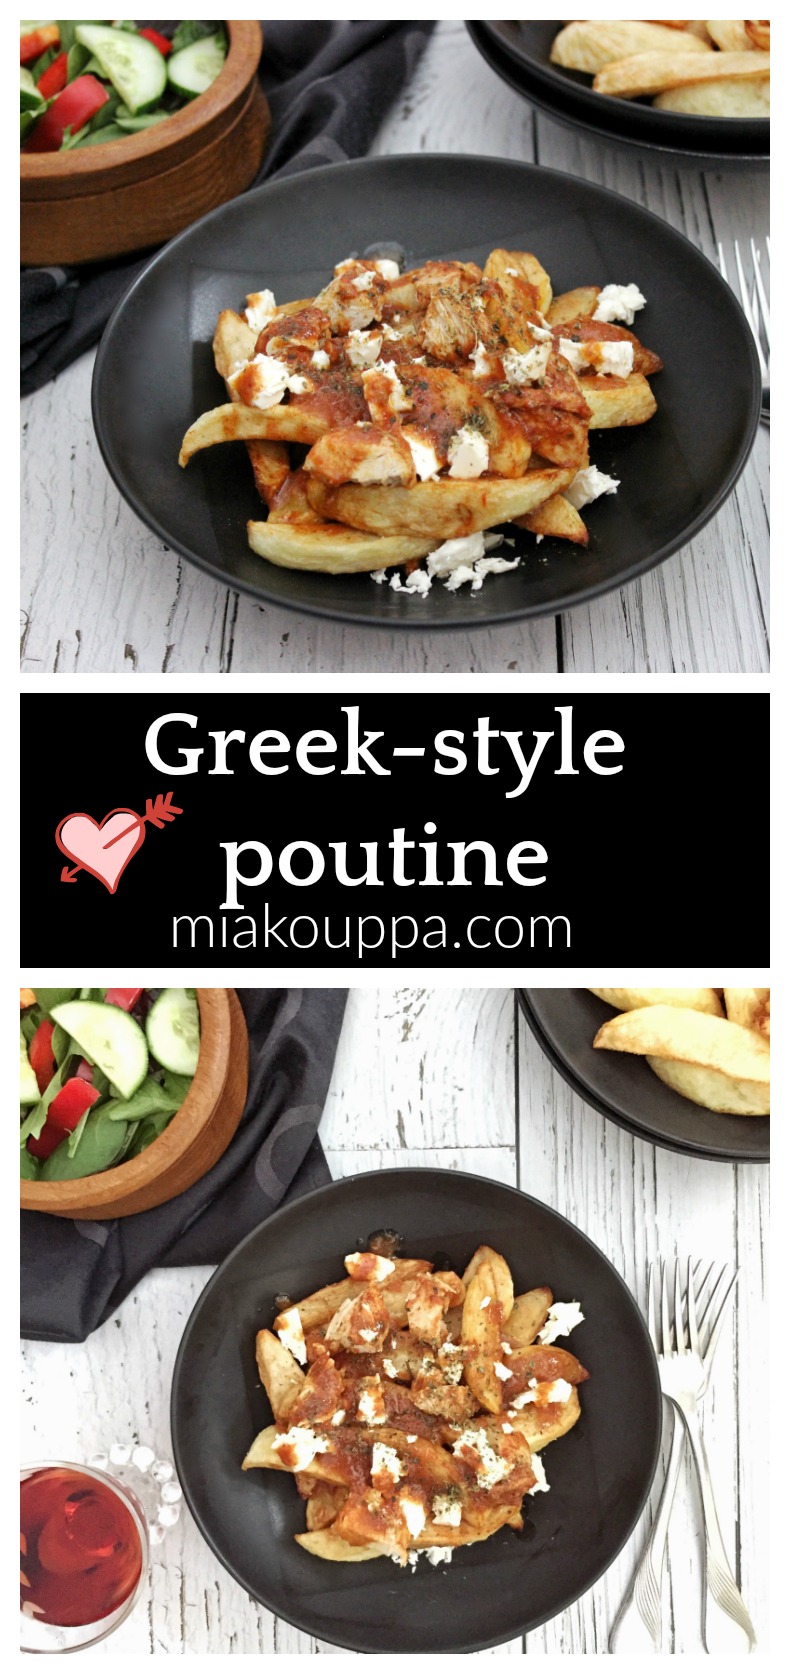 Greek-style poutine